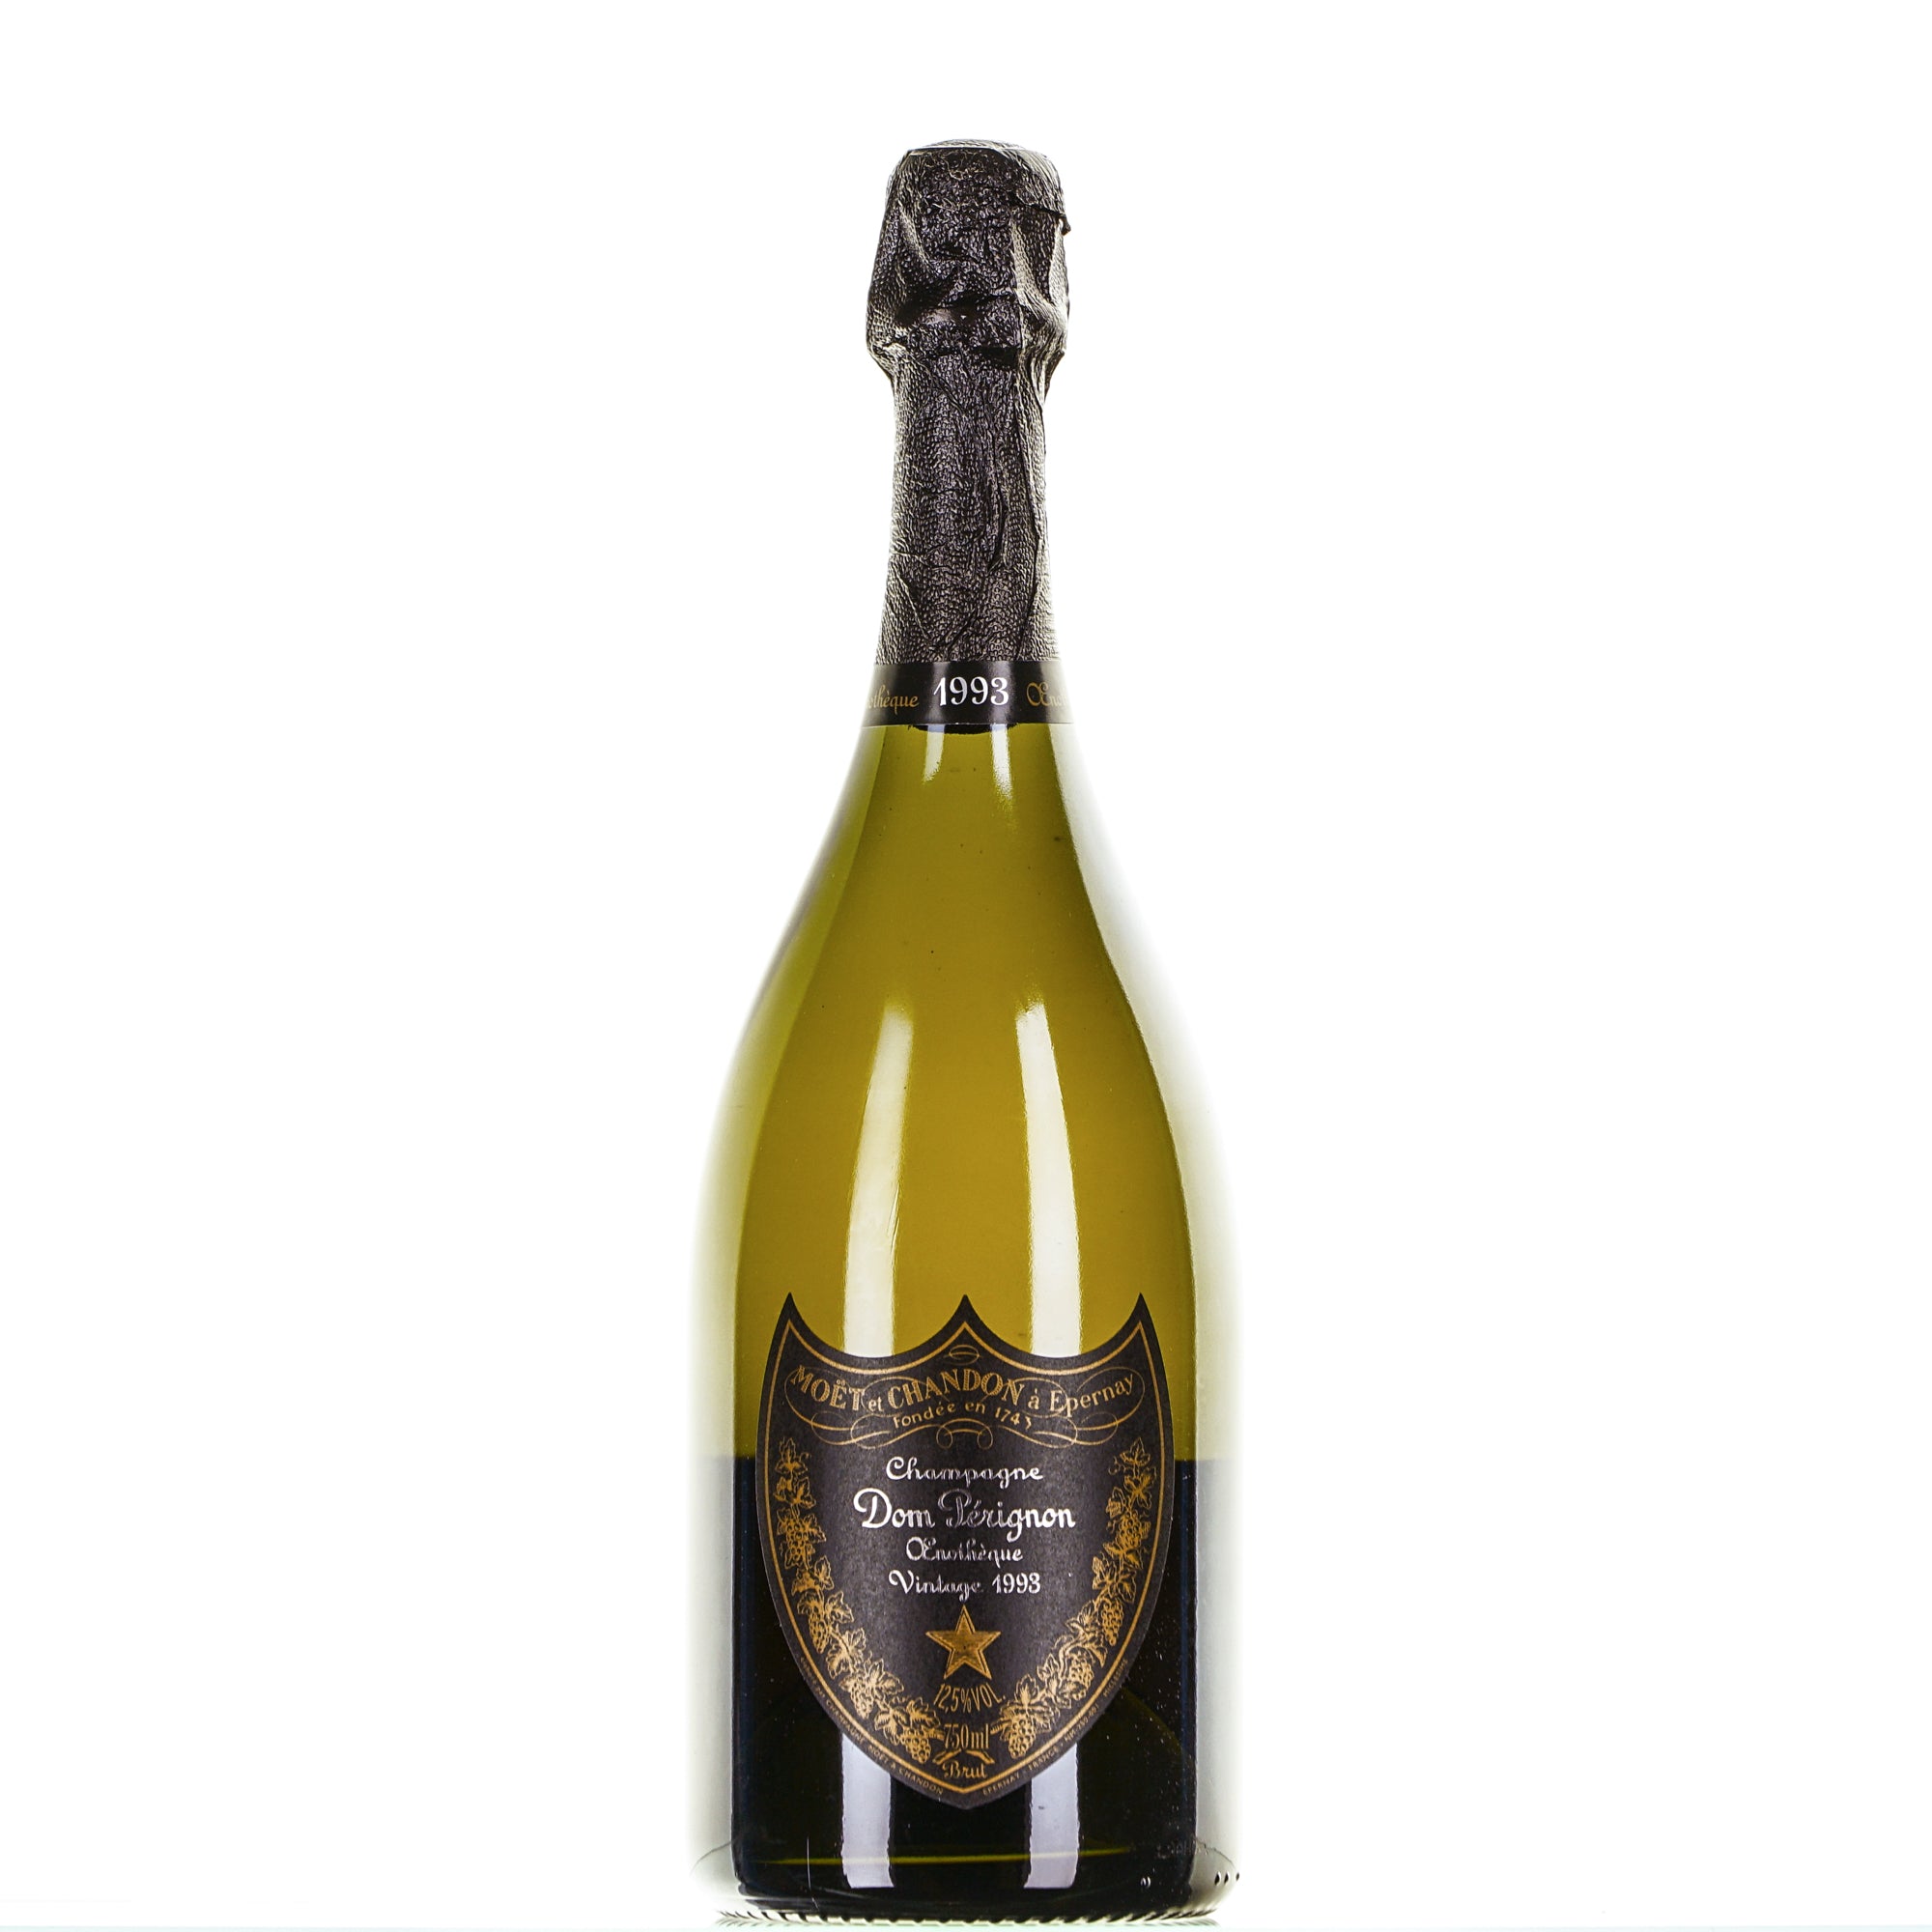 Champagne Dom Perignon 1993 Enotheque Moet&Chandon lt.0,750